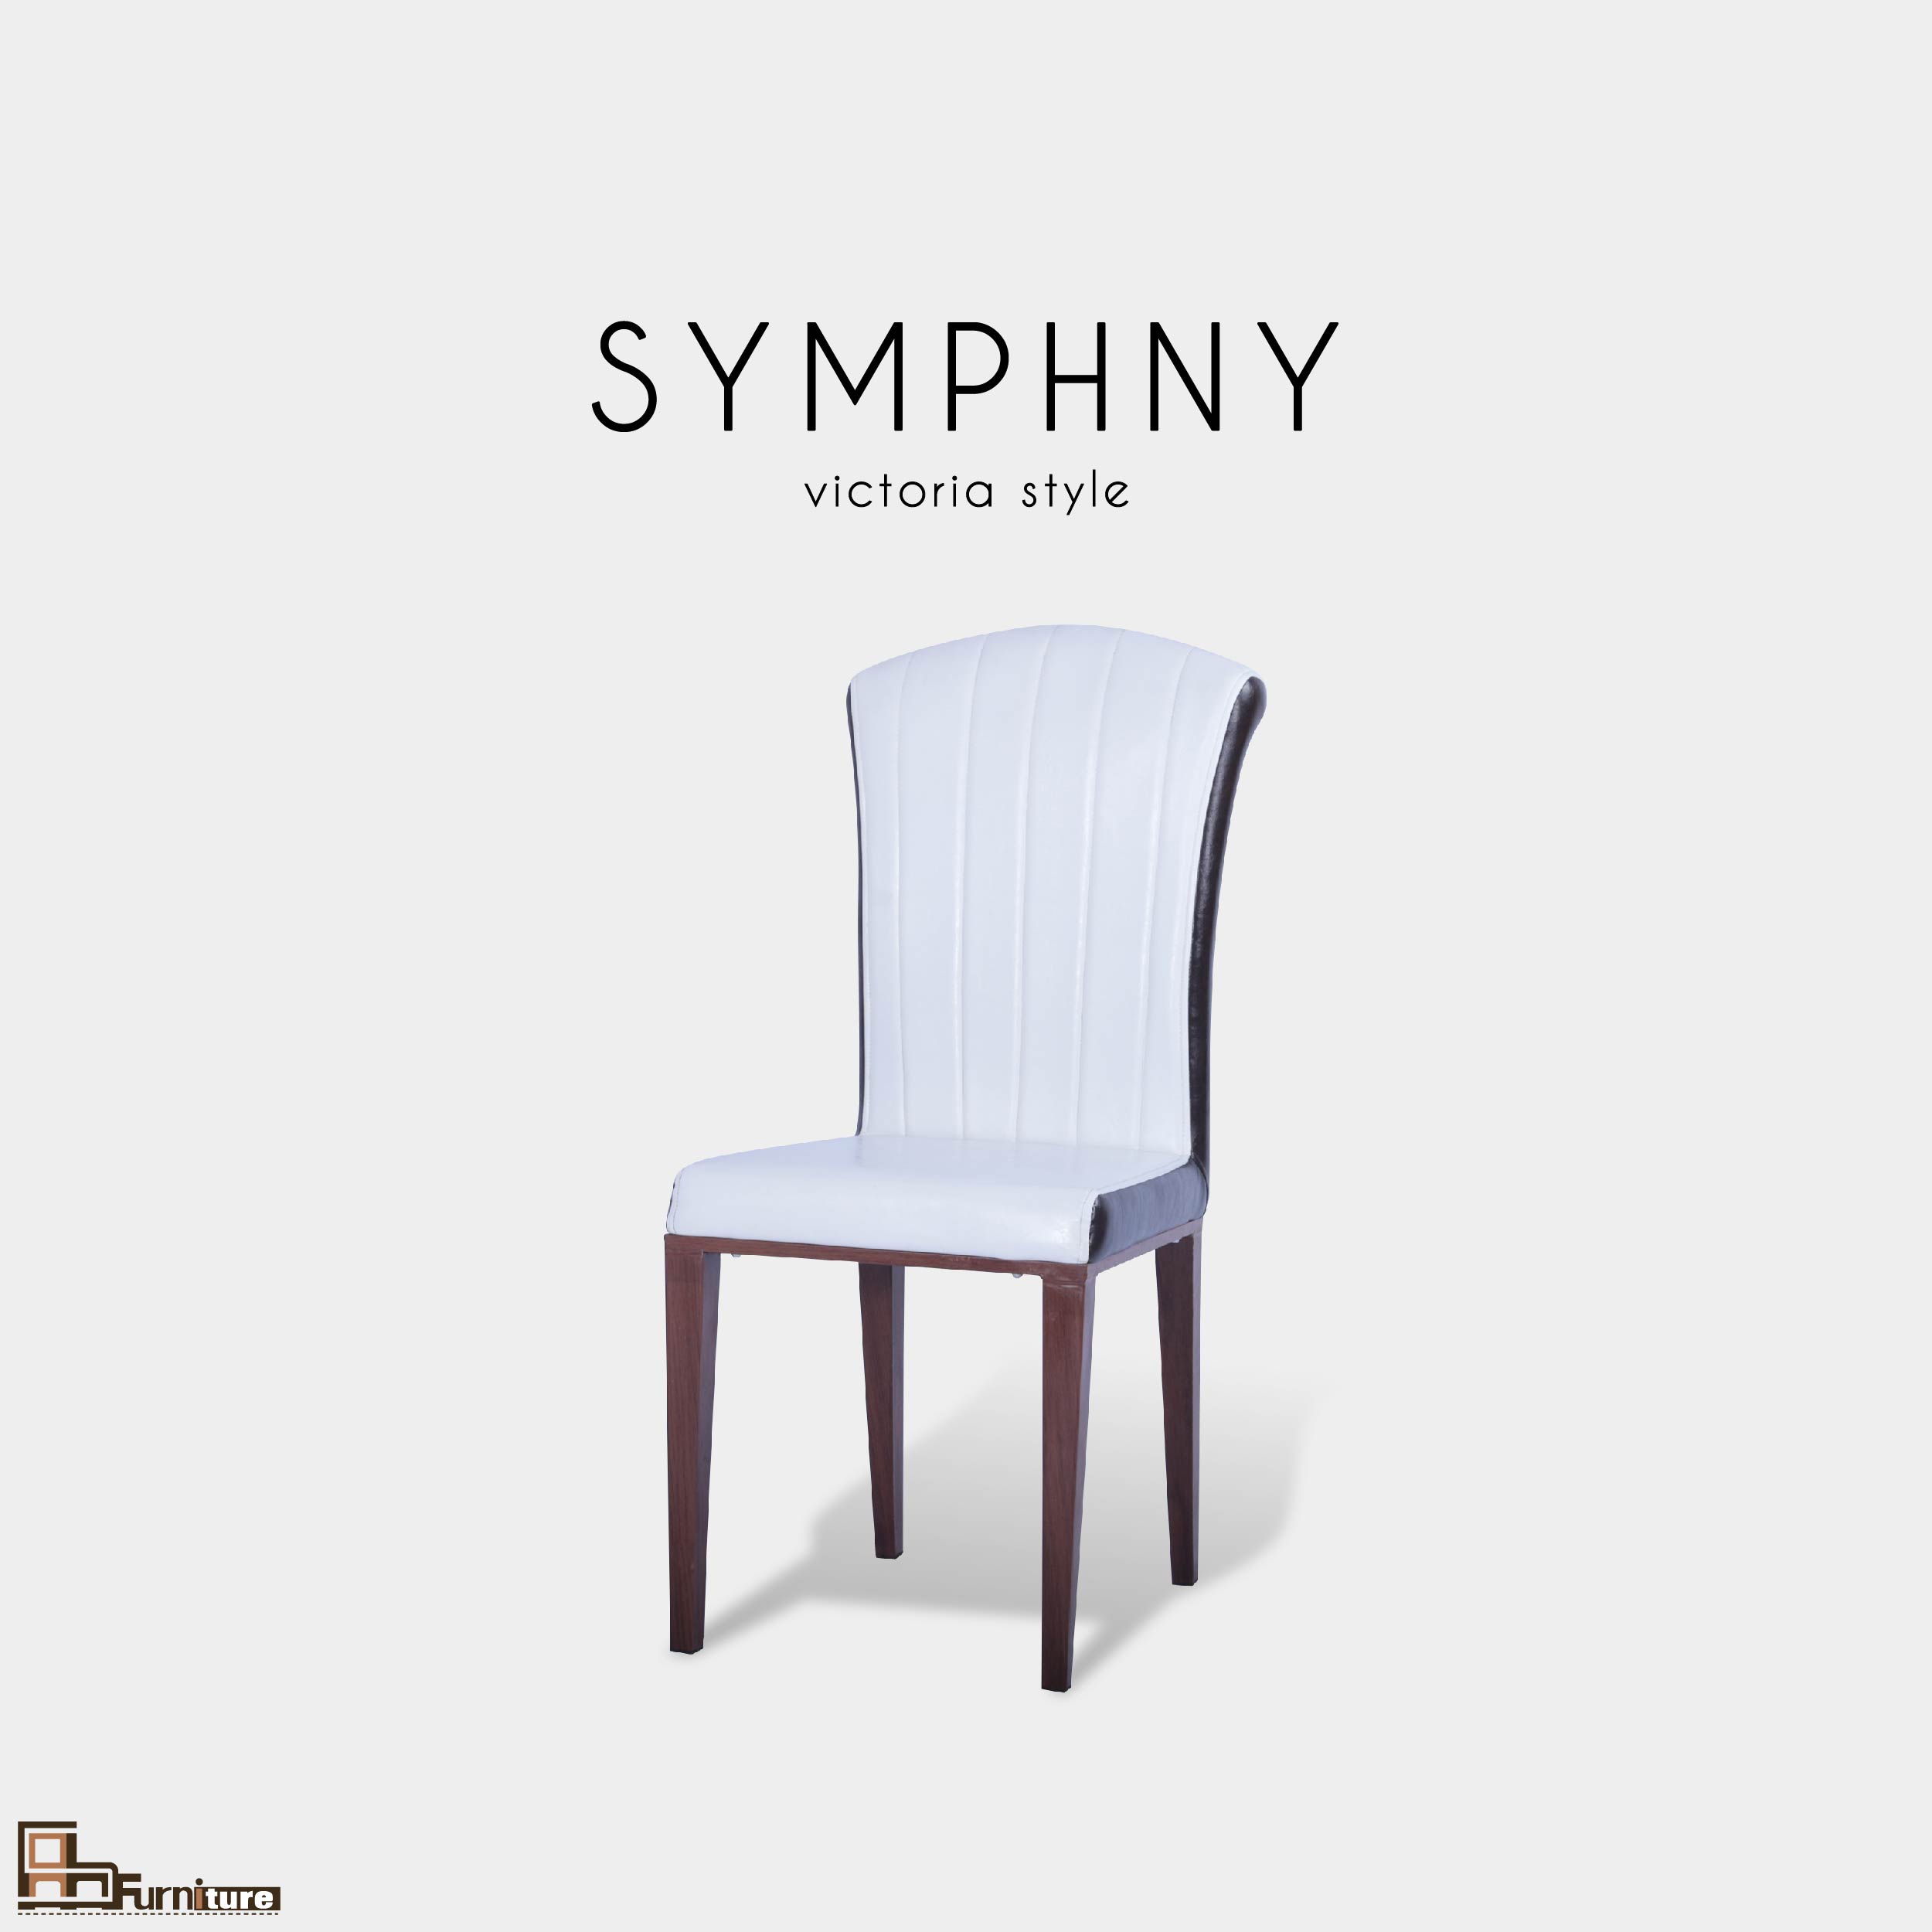 ASFURNITUREHOME / SYMPHONY (ซิมโฟนี่) เก้าอี้ทานอาหาร โครงขาไม้ เบาะหนัง